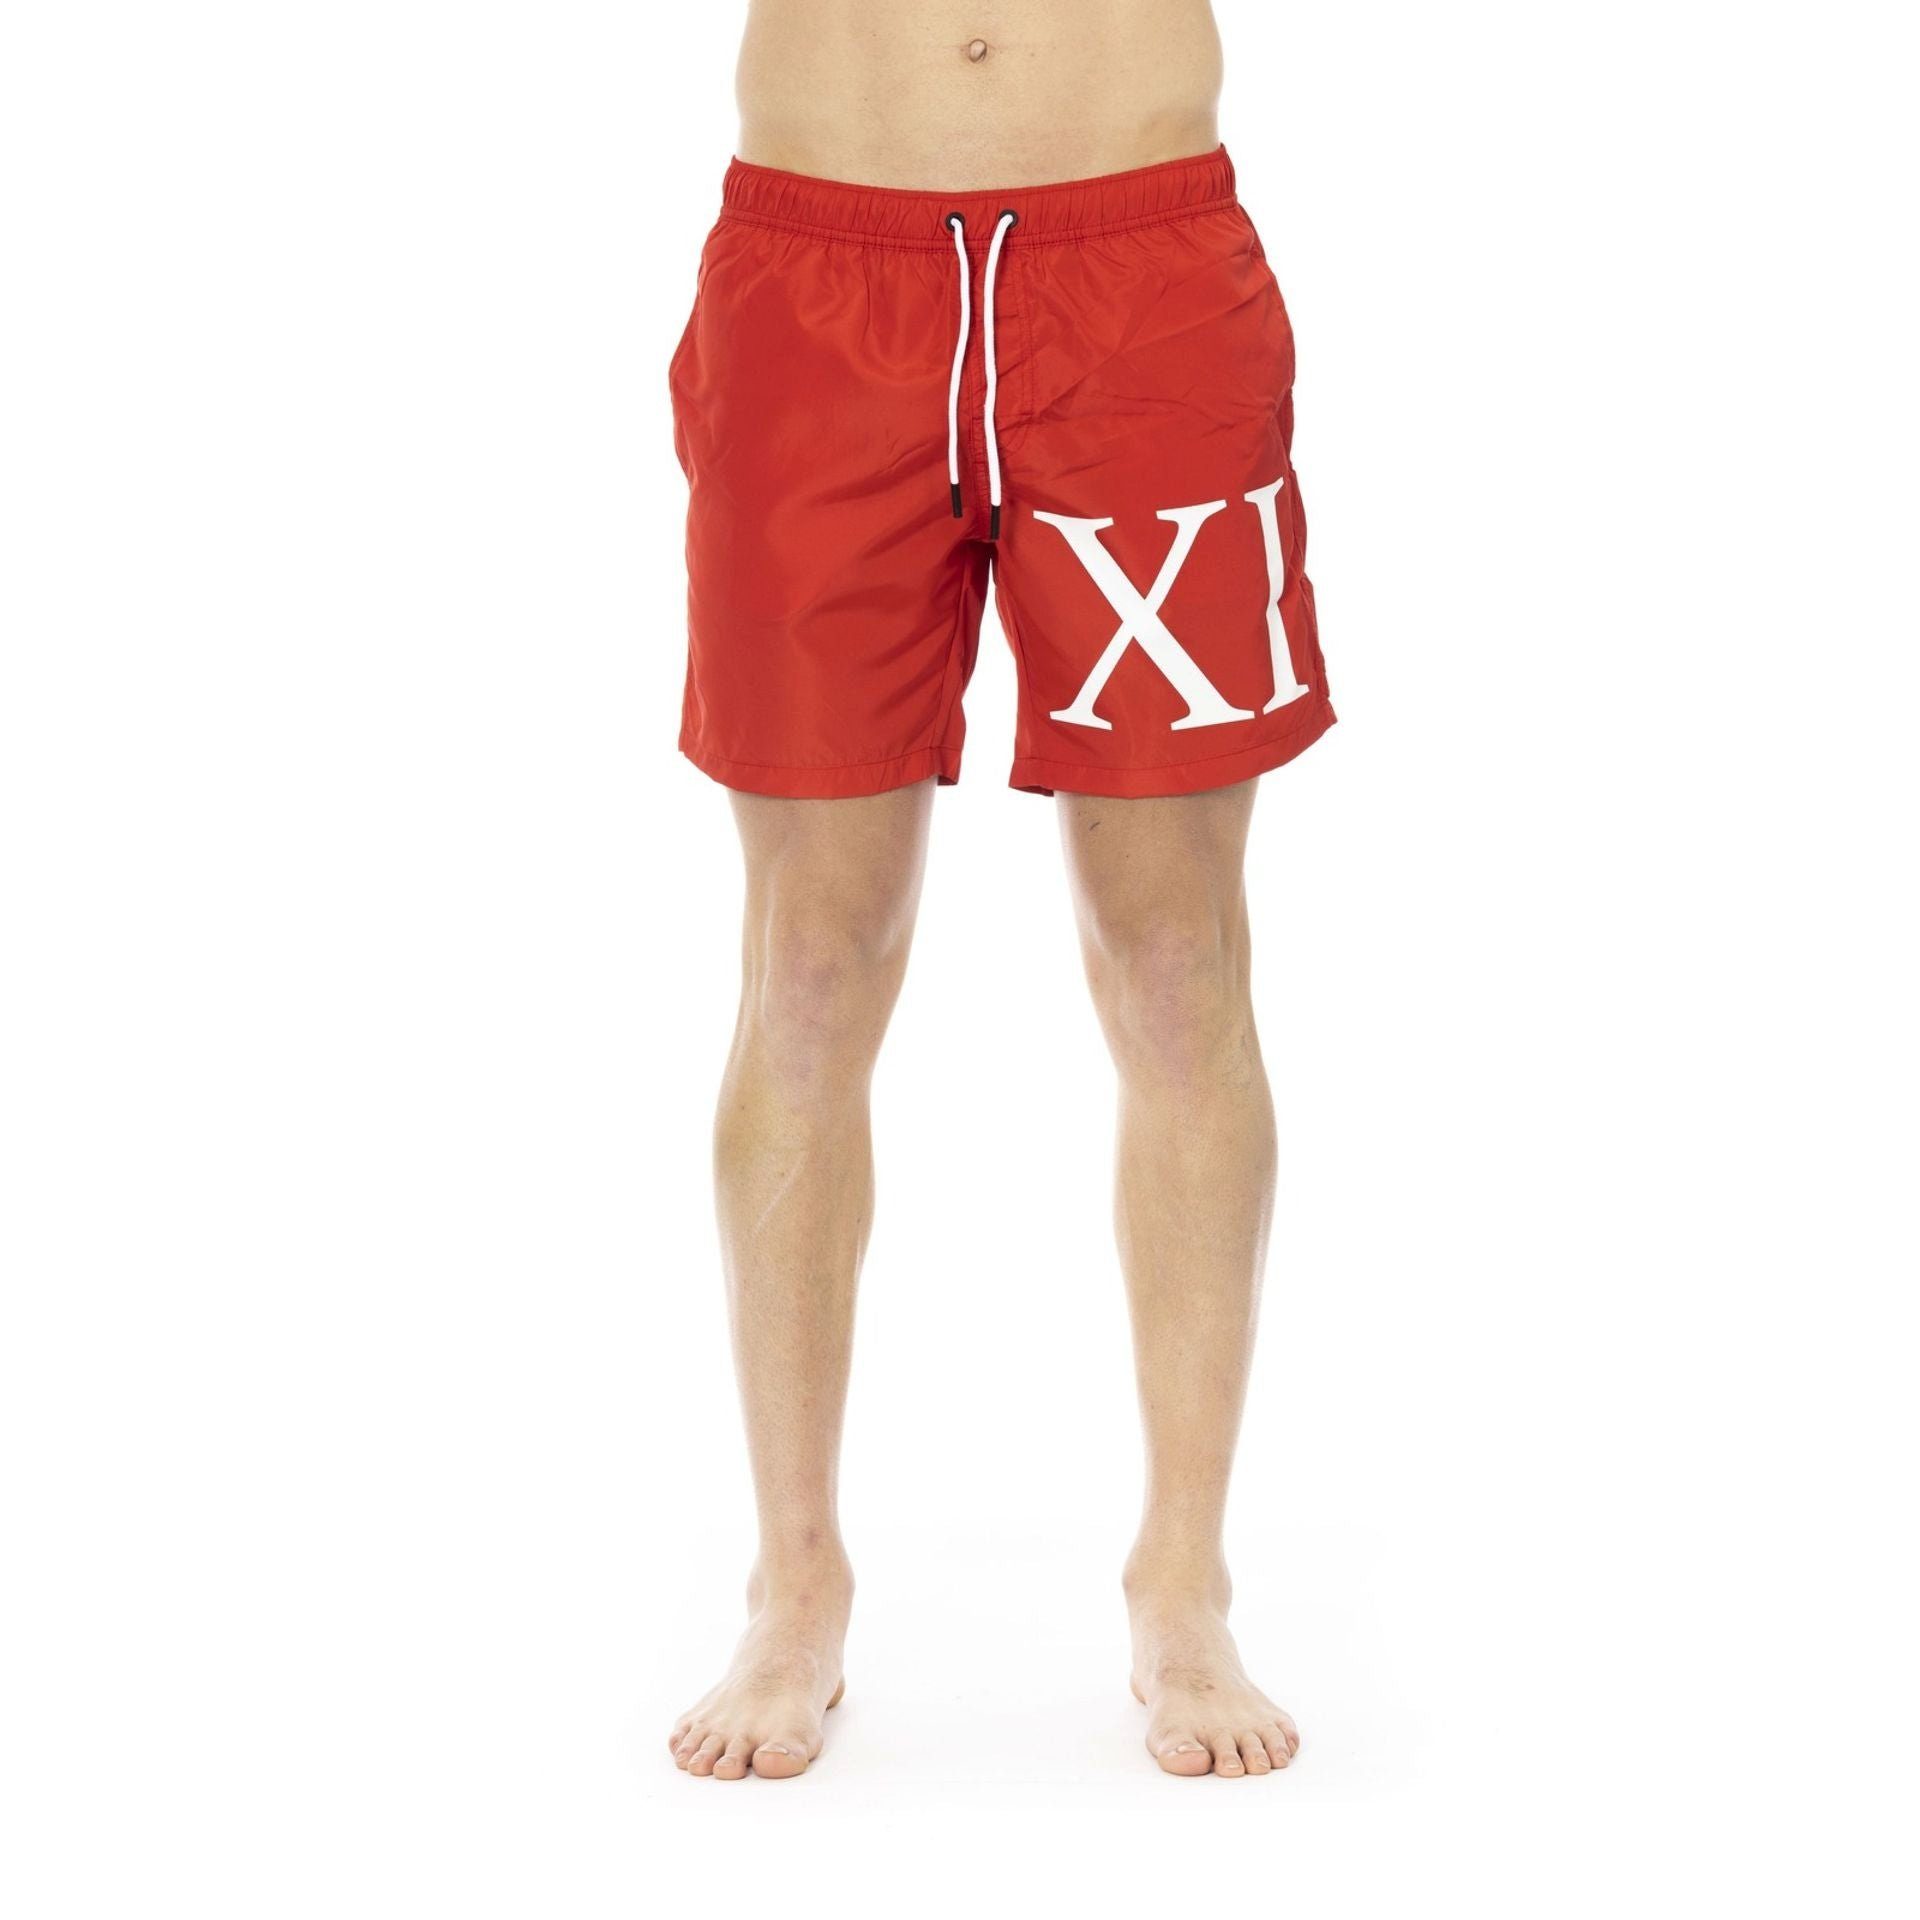 Herren deinen Boxer-Badehose für Sommerurlaub Rot Bikkembergs Must-Have Boxershorts, Beachwear, Bikkembergs